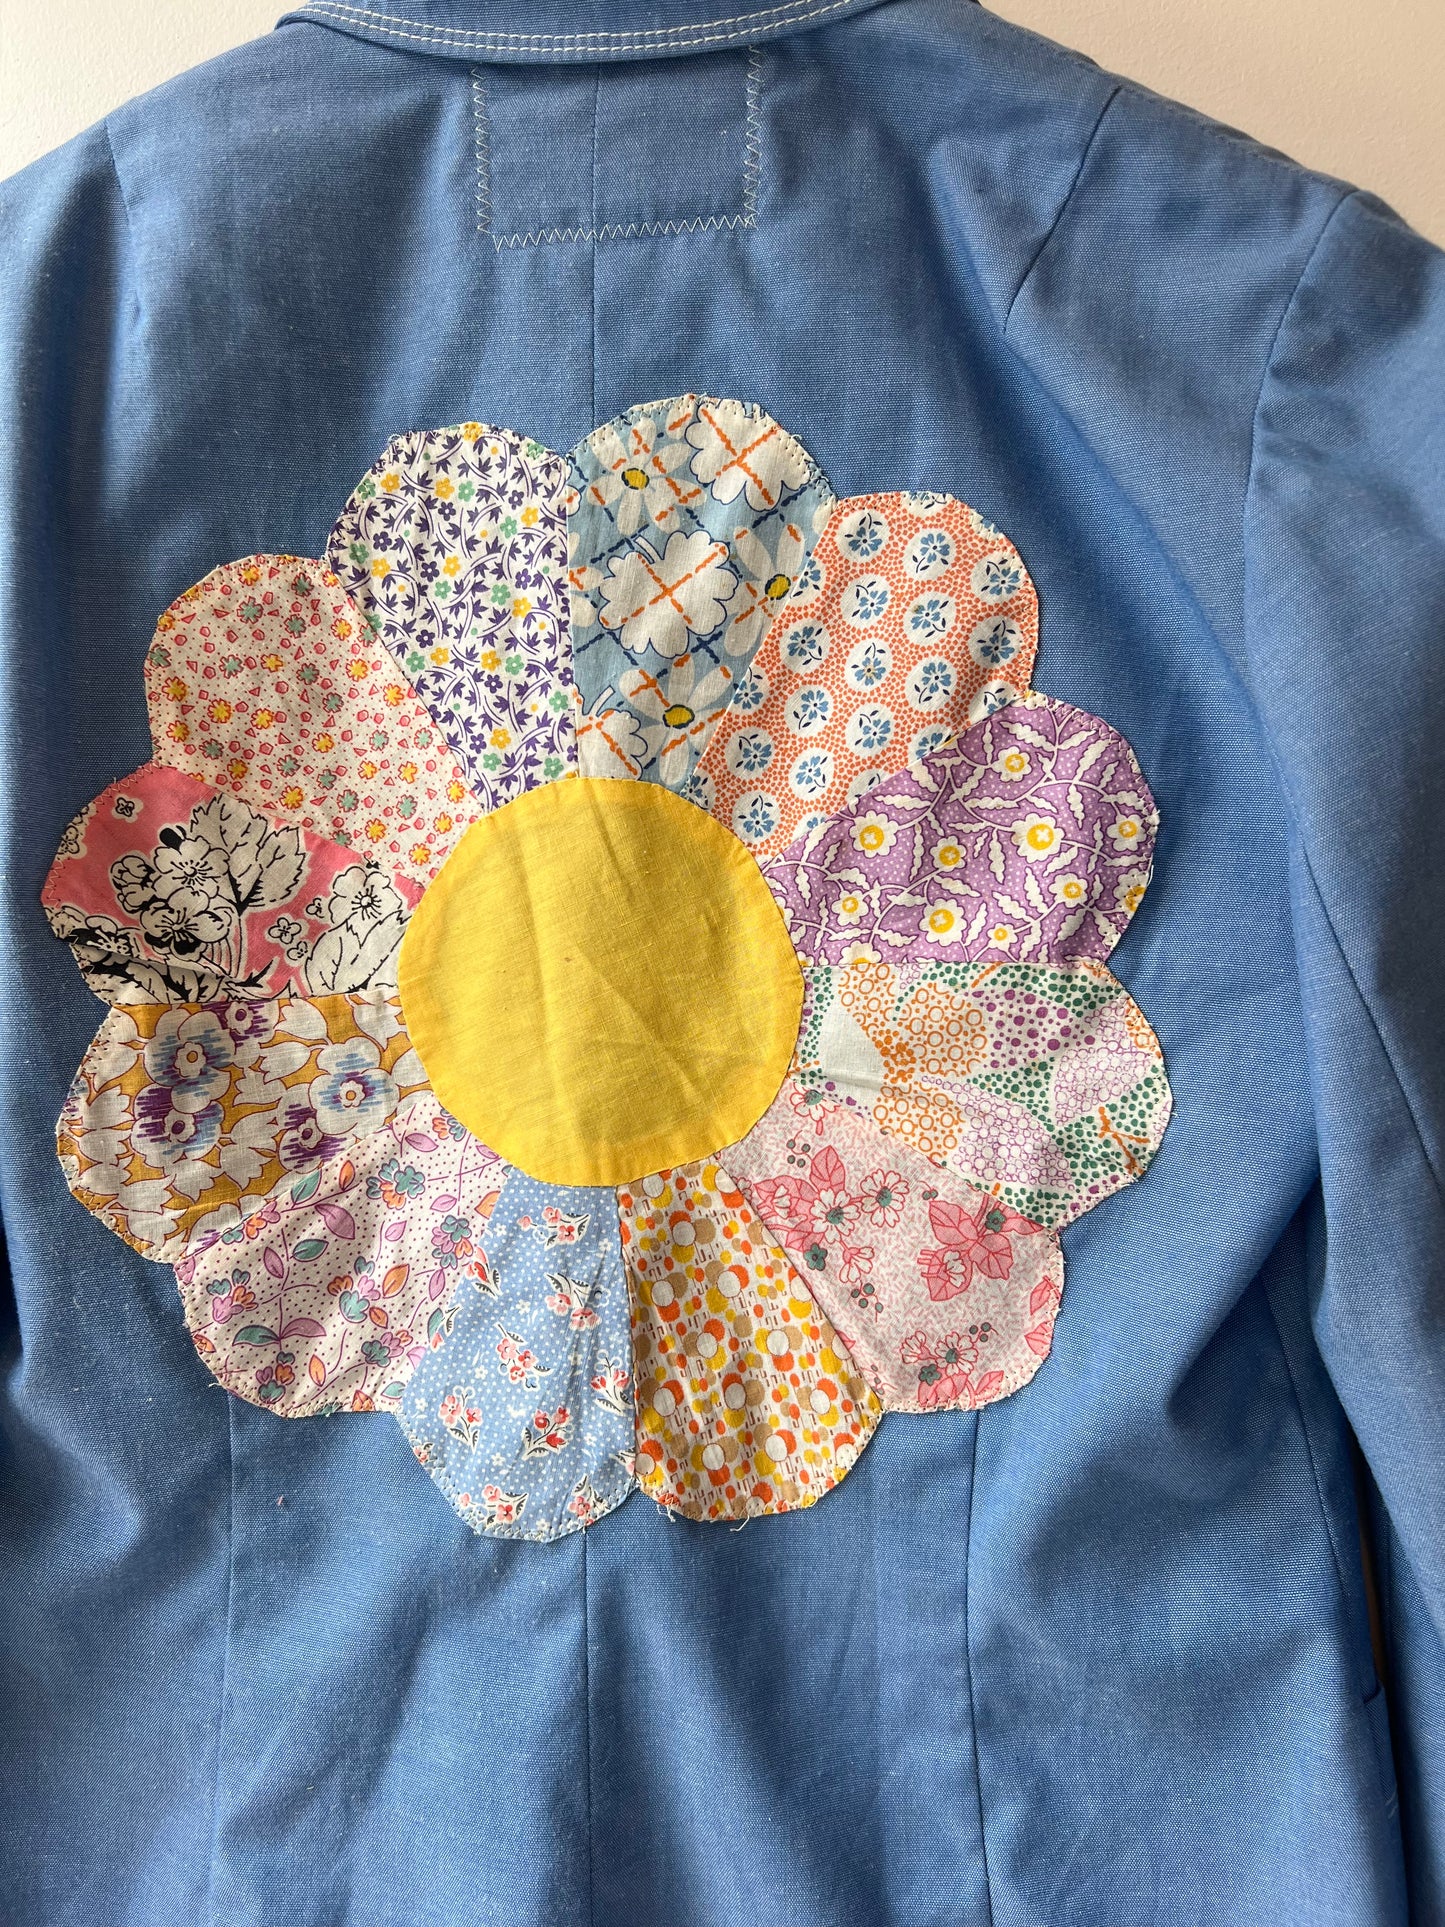 Custom Blue Blazer with Flower Quilt Patchwork